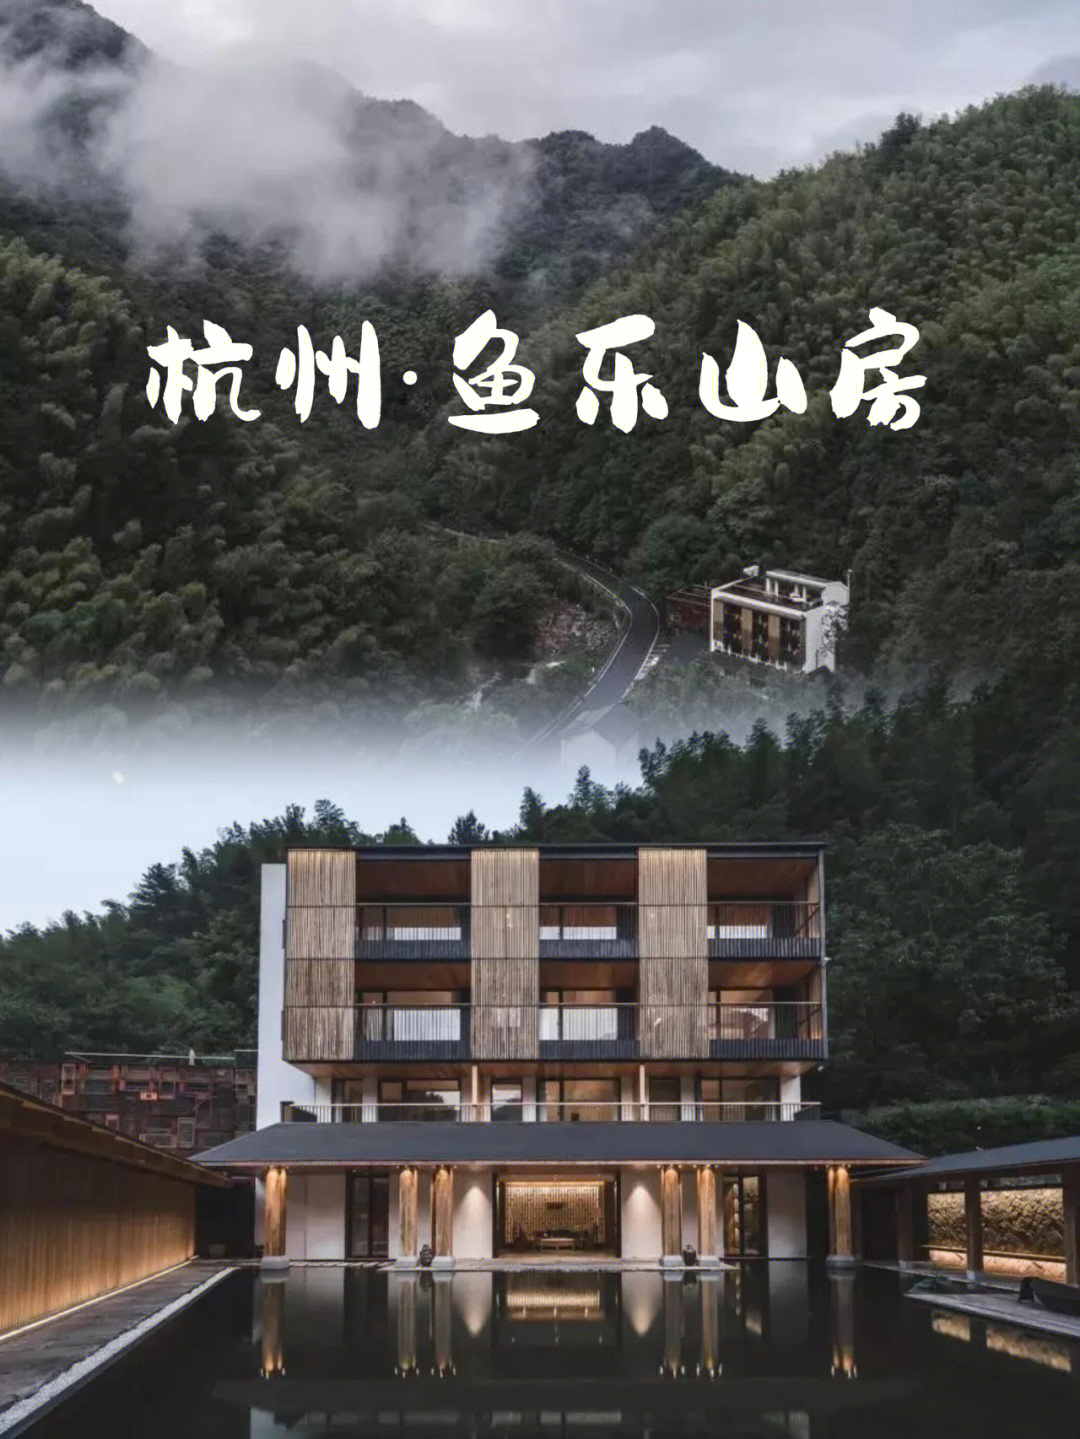 90民宿位于杭州天目山南麓7215,风景优美,格局通透,前院水天